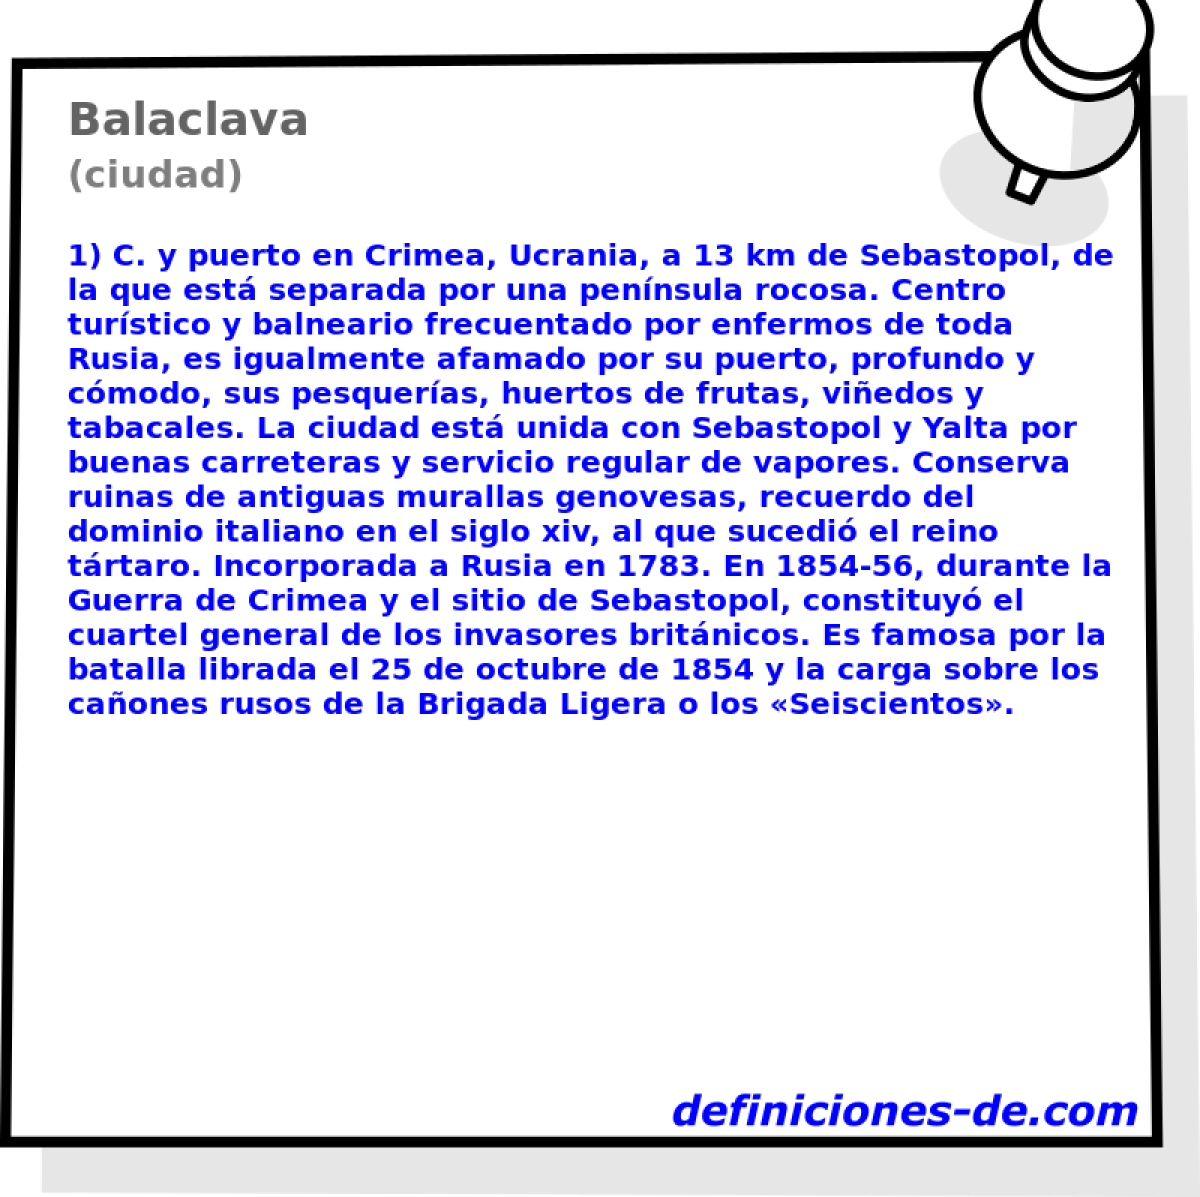 Balaclava (ciudad)